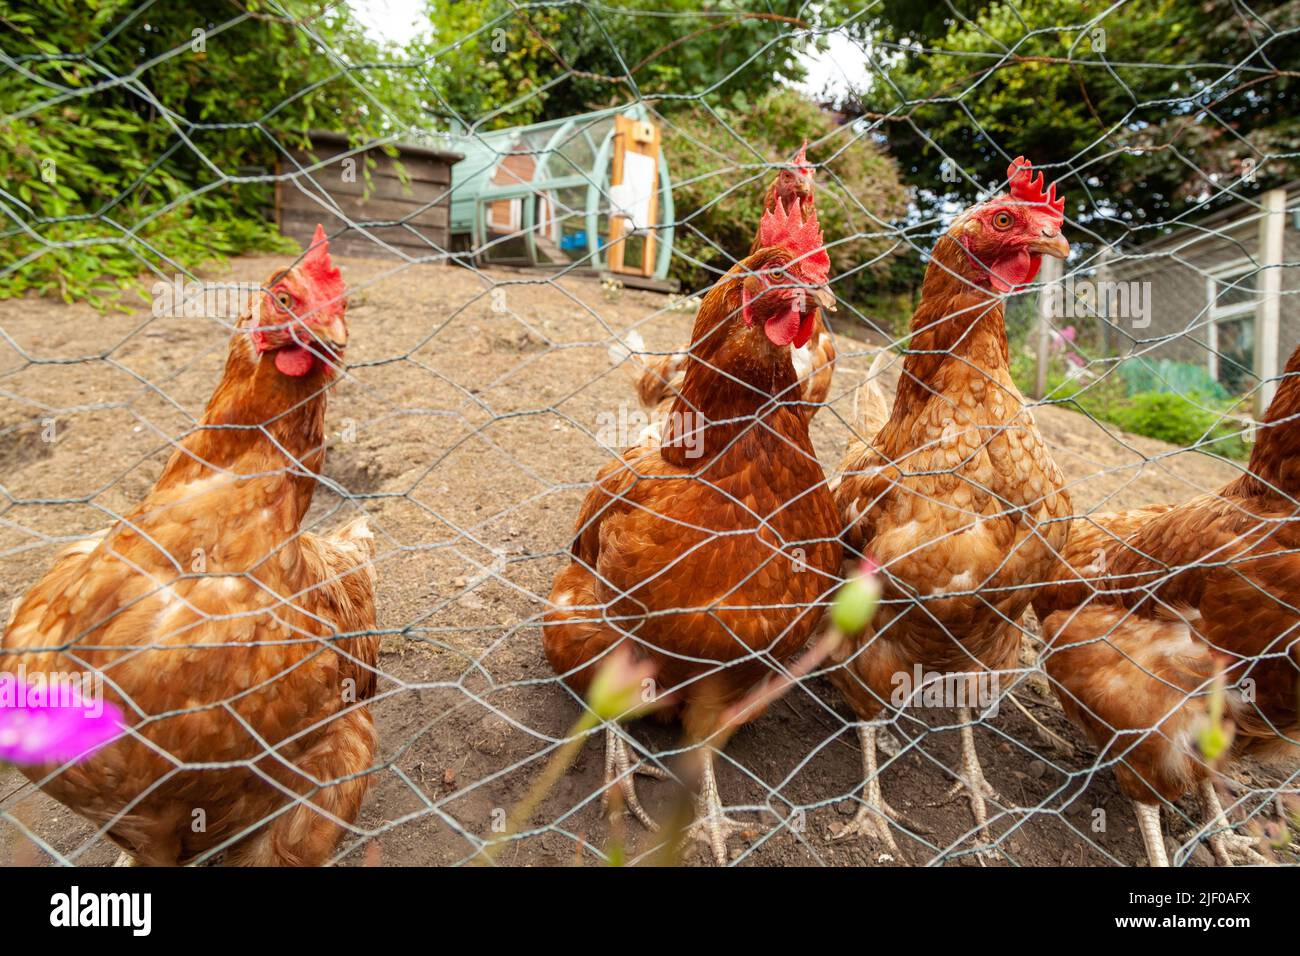 Un groupe de poulets debout à l'extérieur derrière une clôture en fil de fer Banque D'Images